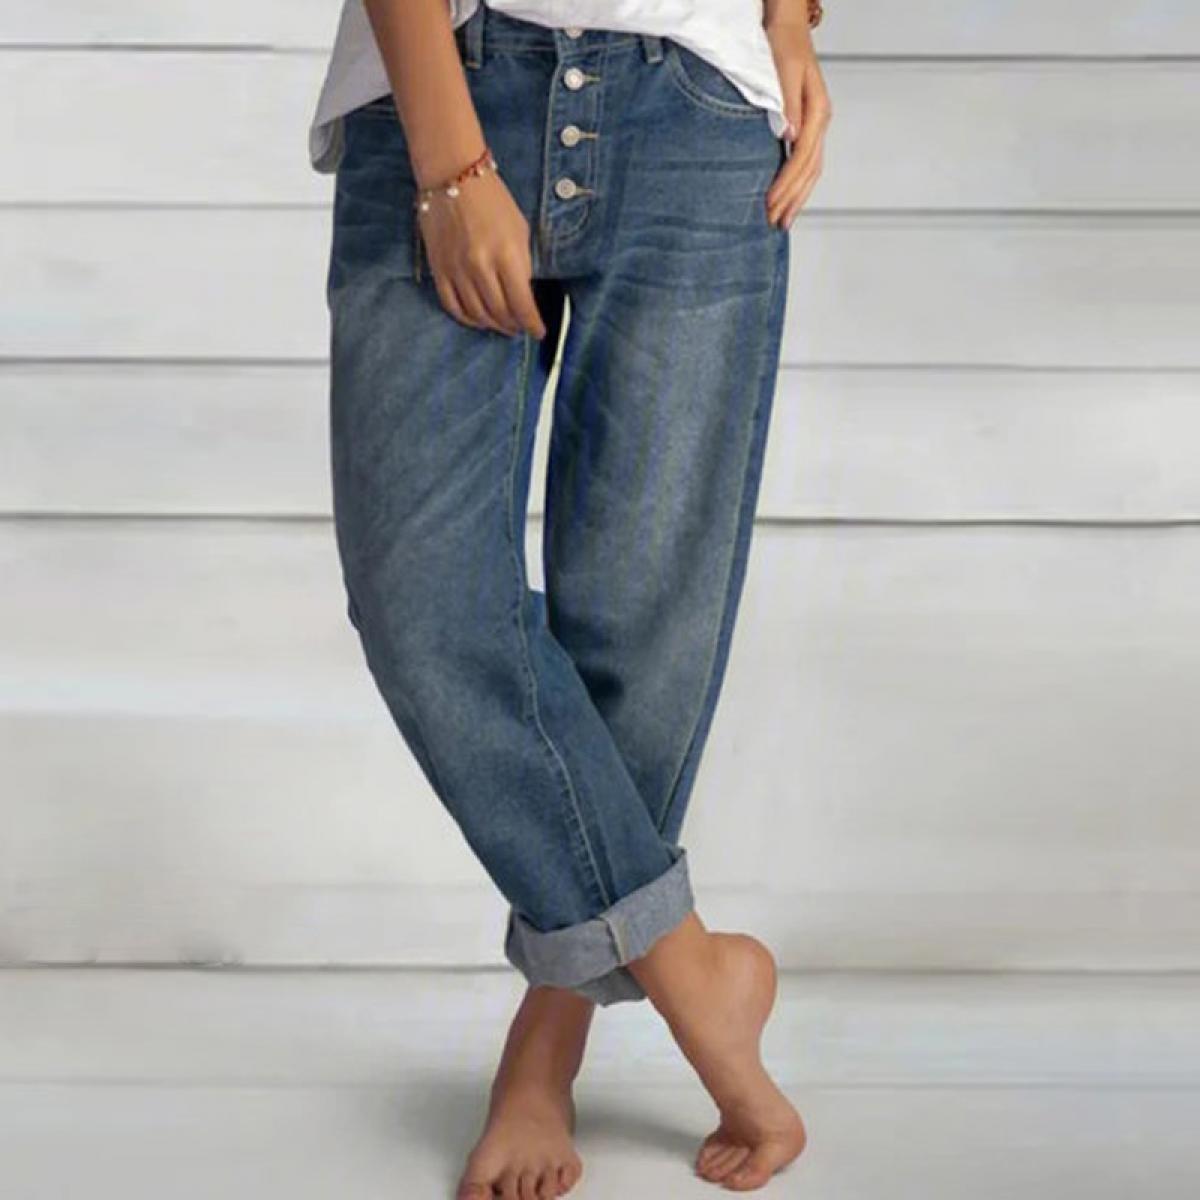 Wear Mom Jeans  Fashion Women Work Jeans  Straight Leg Vs Mom Jeans  Denim Work Pants  Jeans  